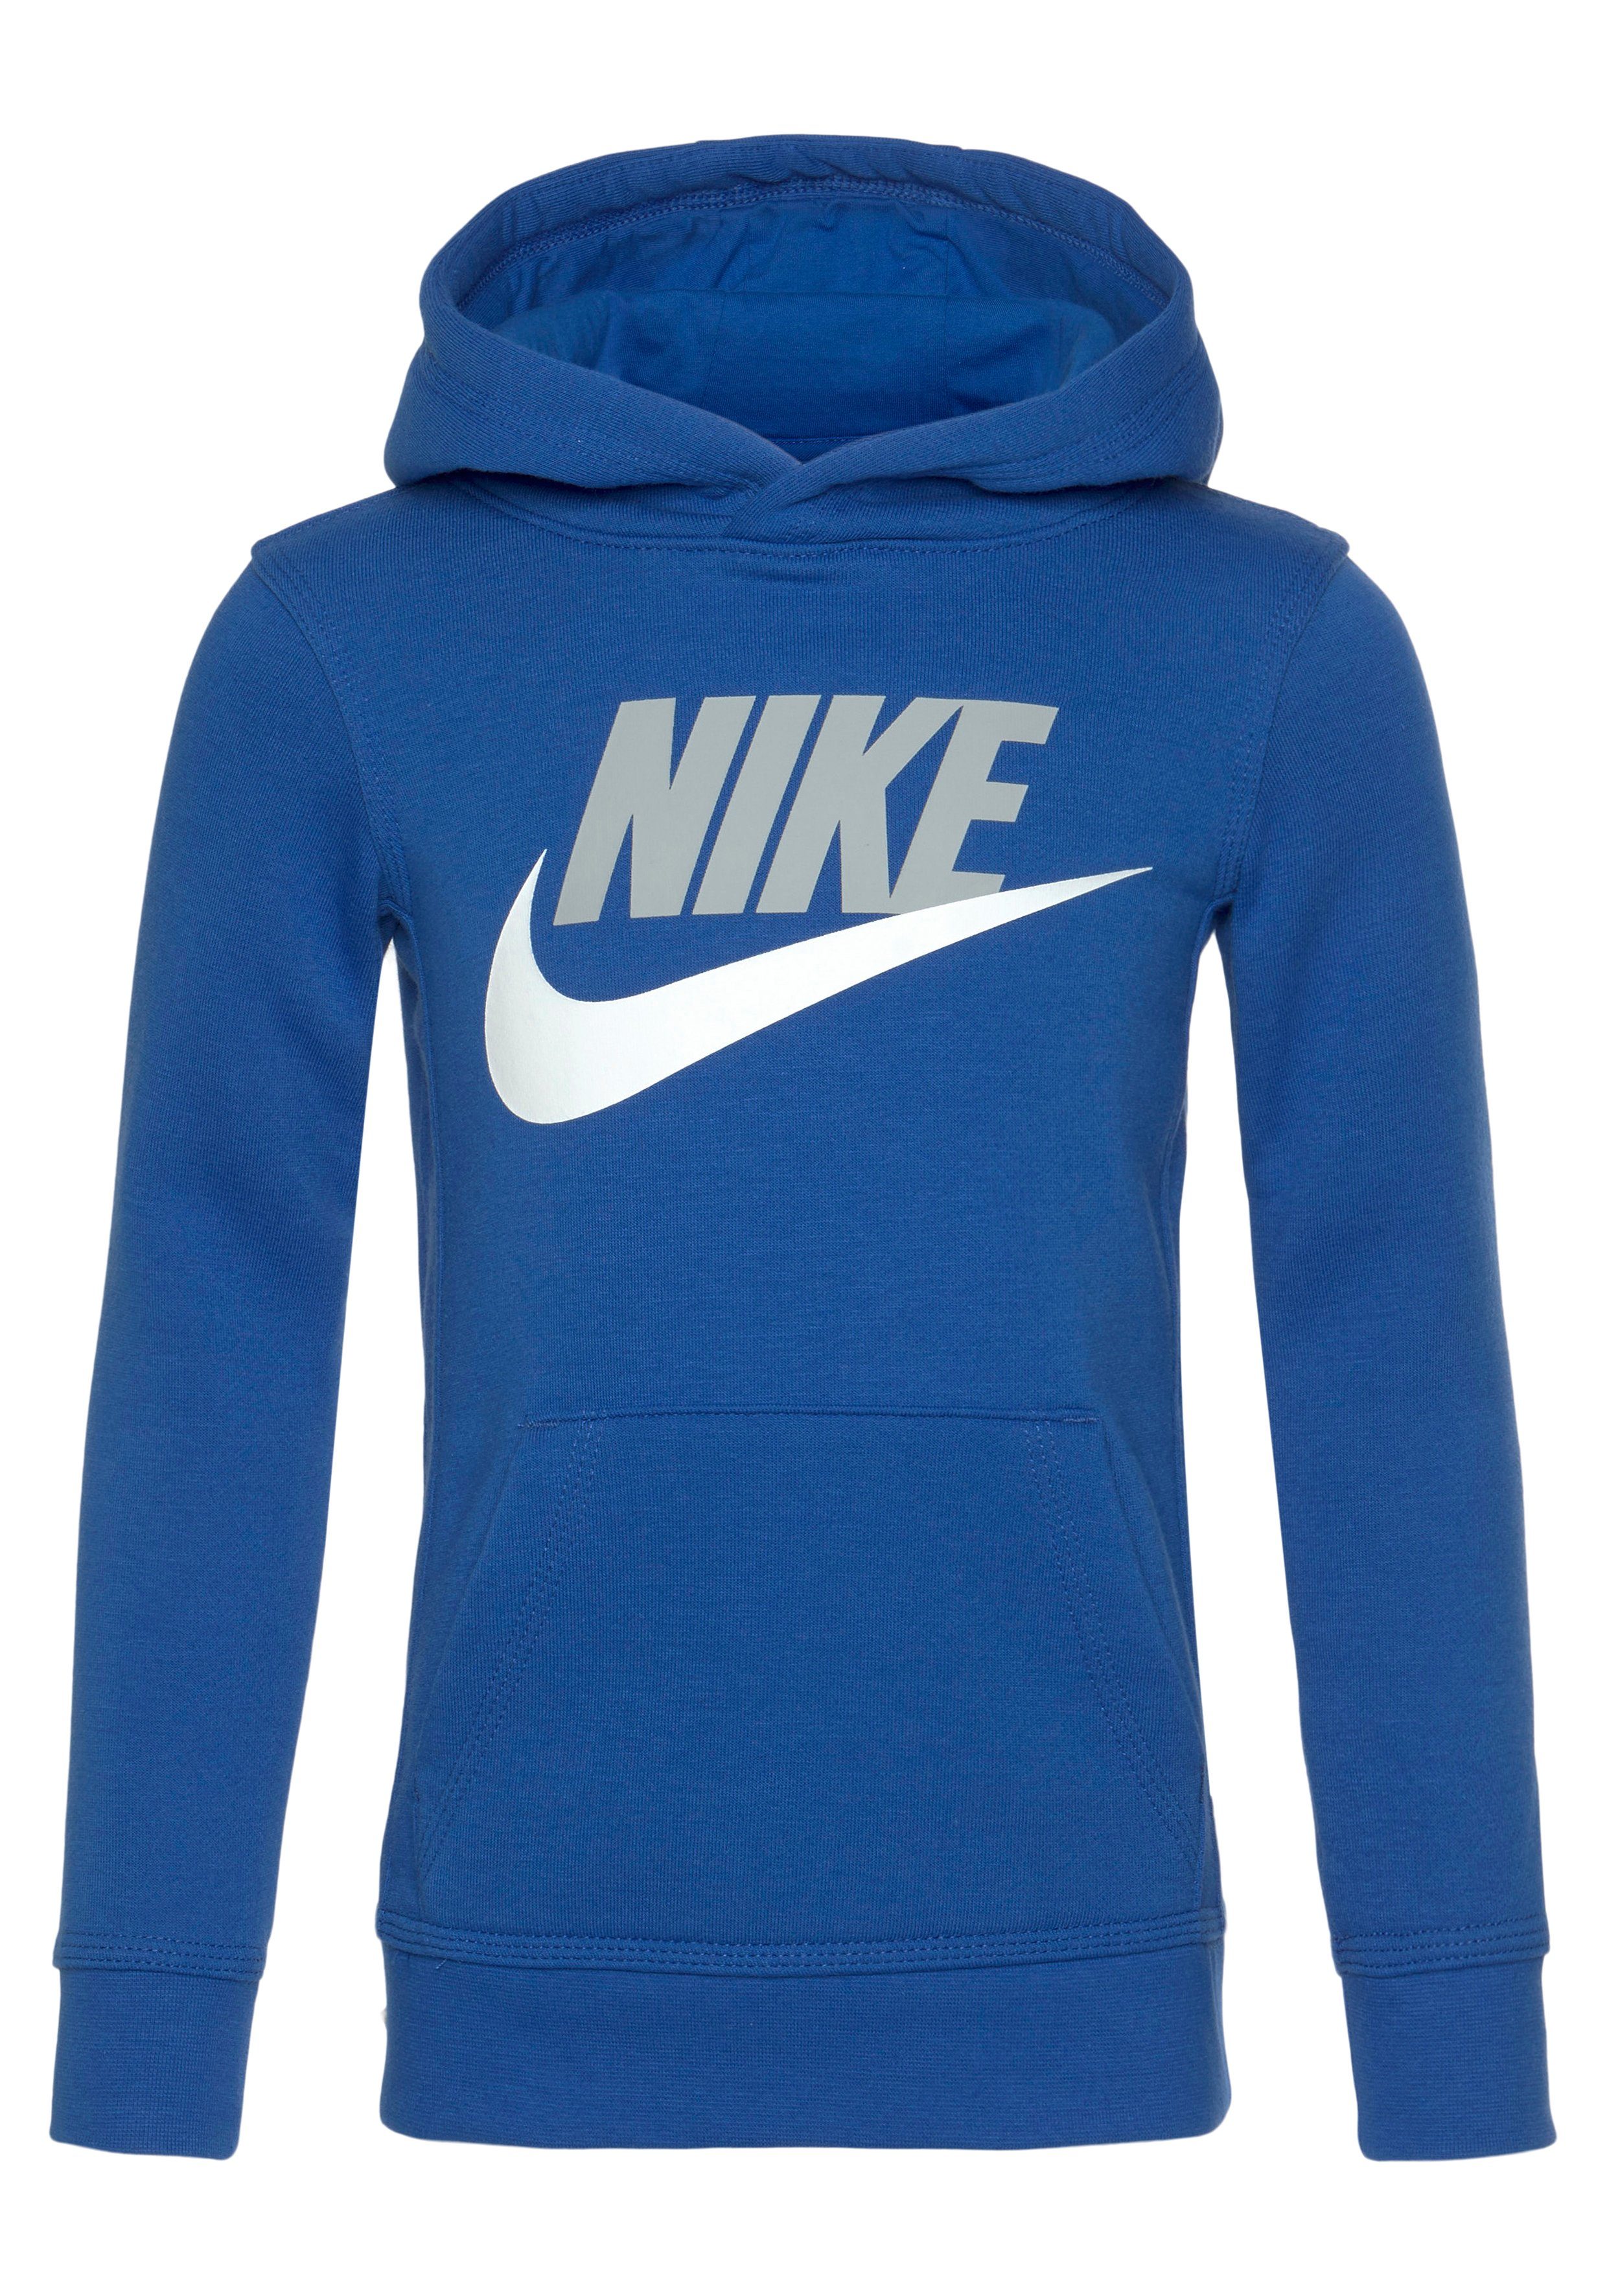 Nike Hoodies Mädchen online kaufen | OTTO